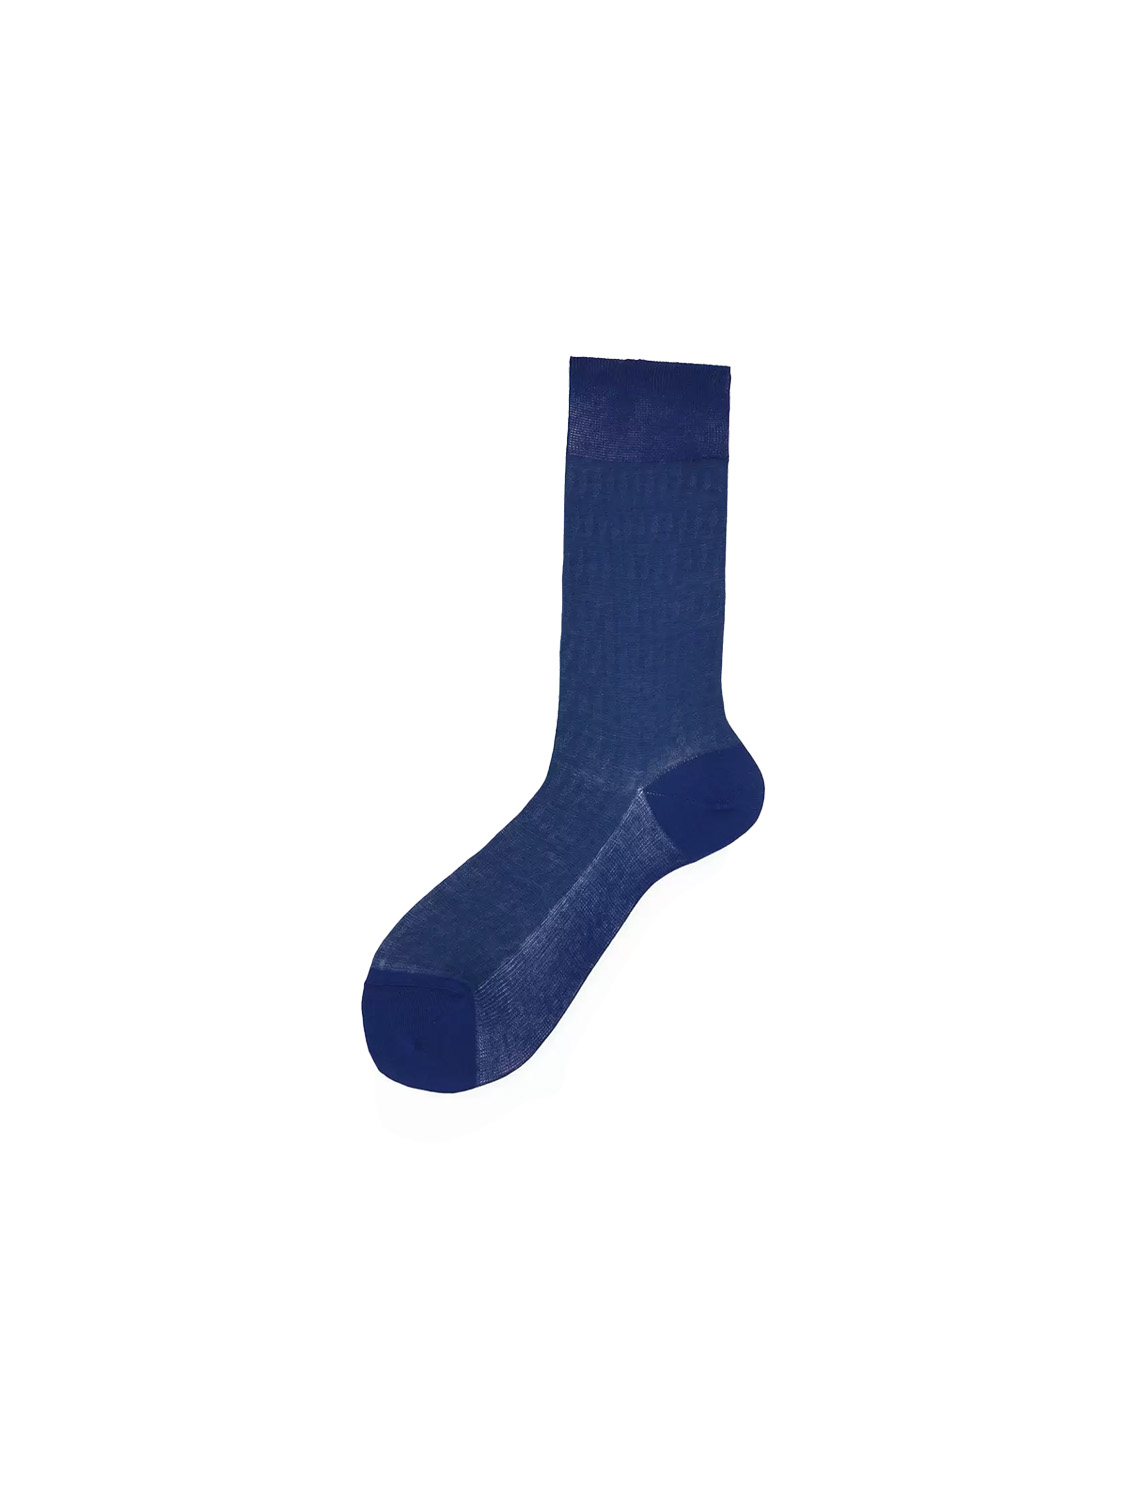 Alto Pyne – Kurze Baumwoll-Socken mit gestreiftem Muster   marine Taille unique